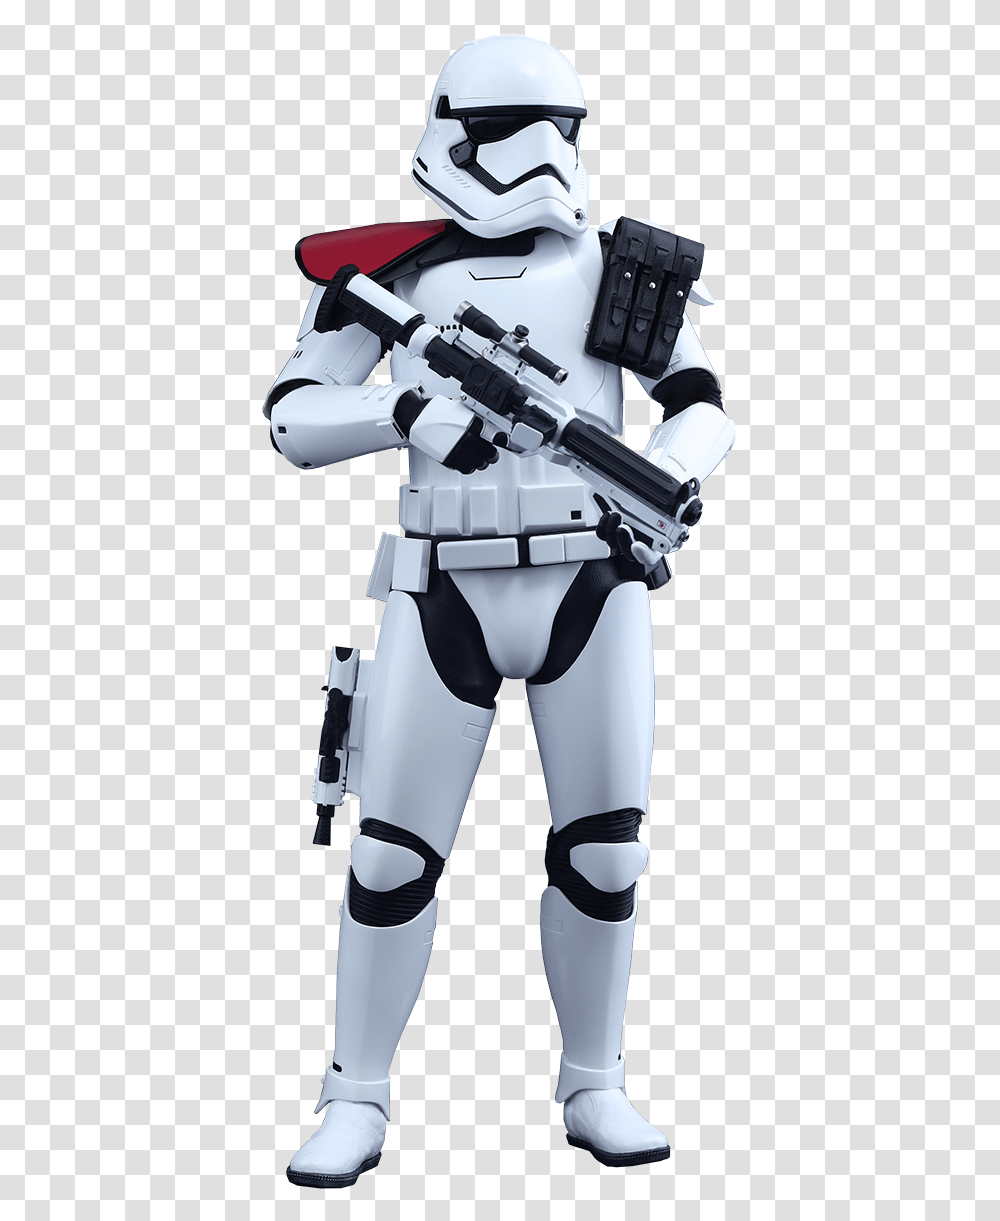 Star Wars First Order Stormtrooper Commander, Helmet, Apparel, Robot Transparent Png